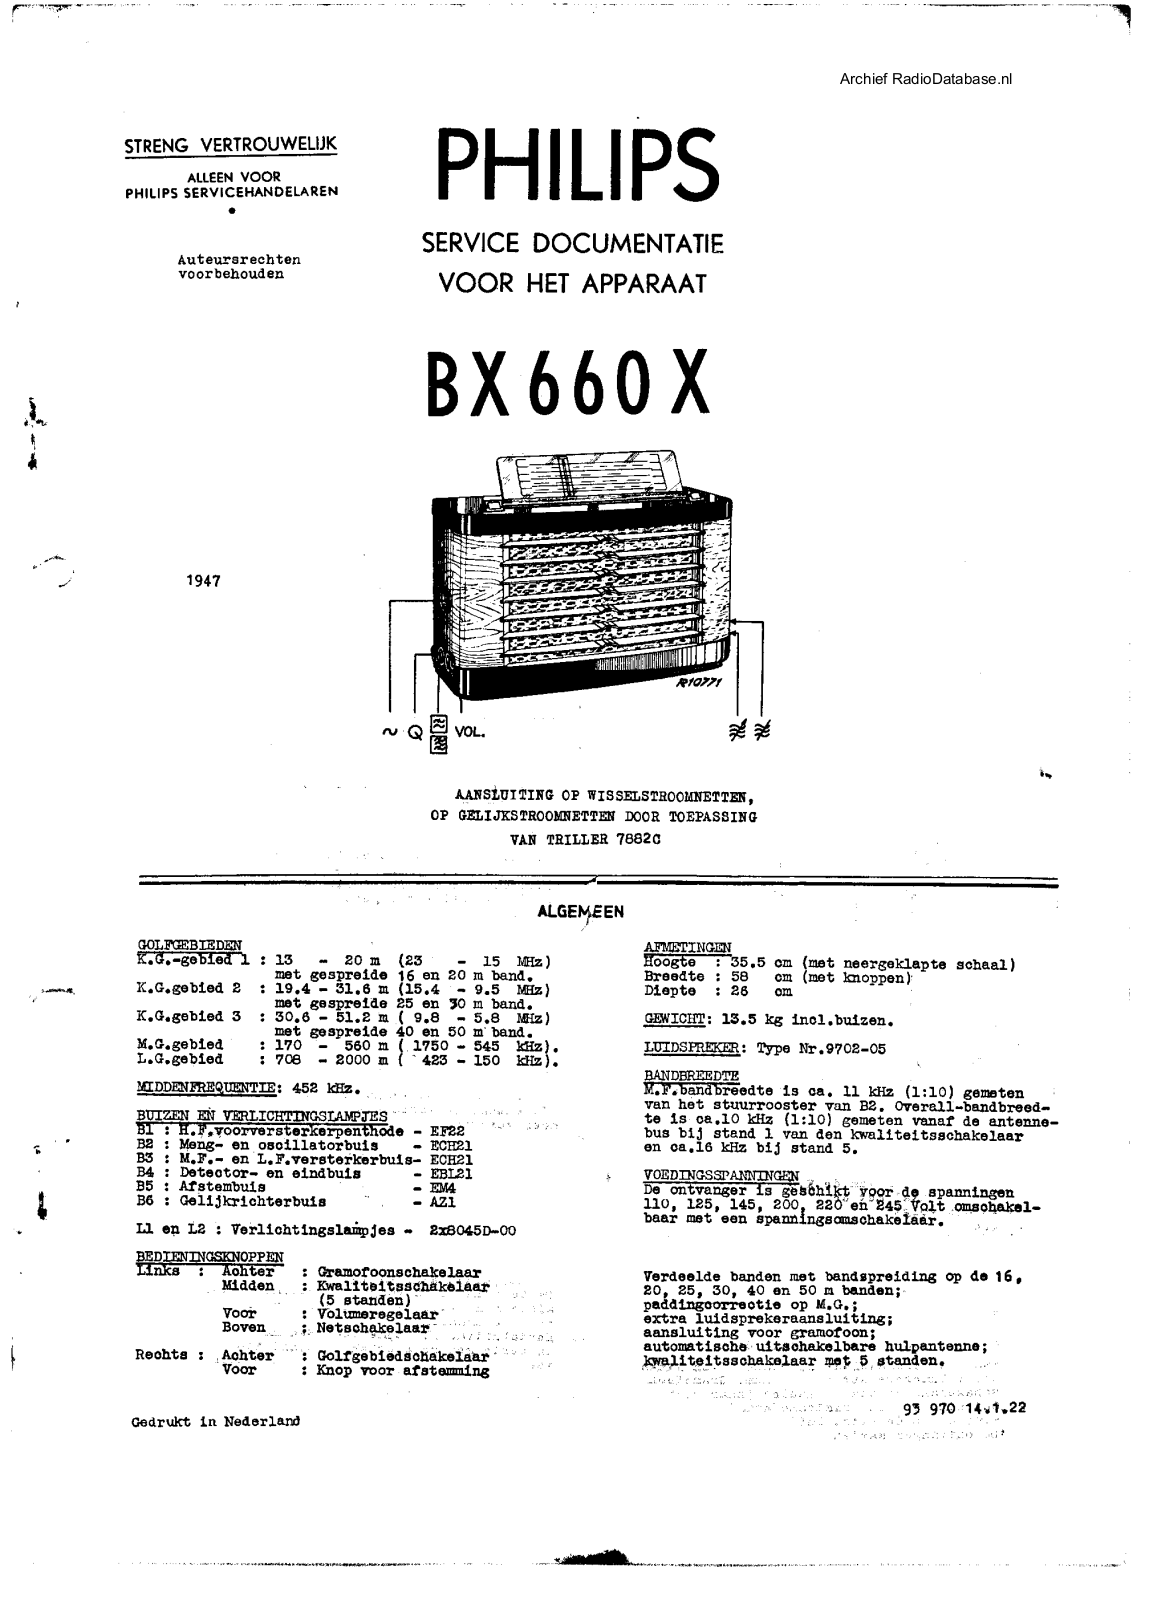 Philips BX660X Schematic